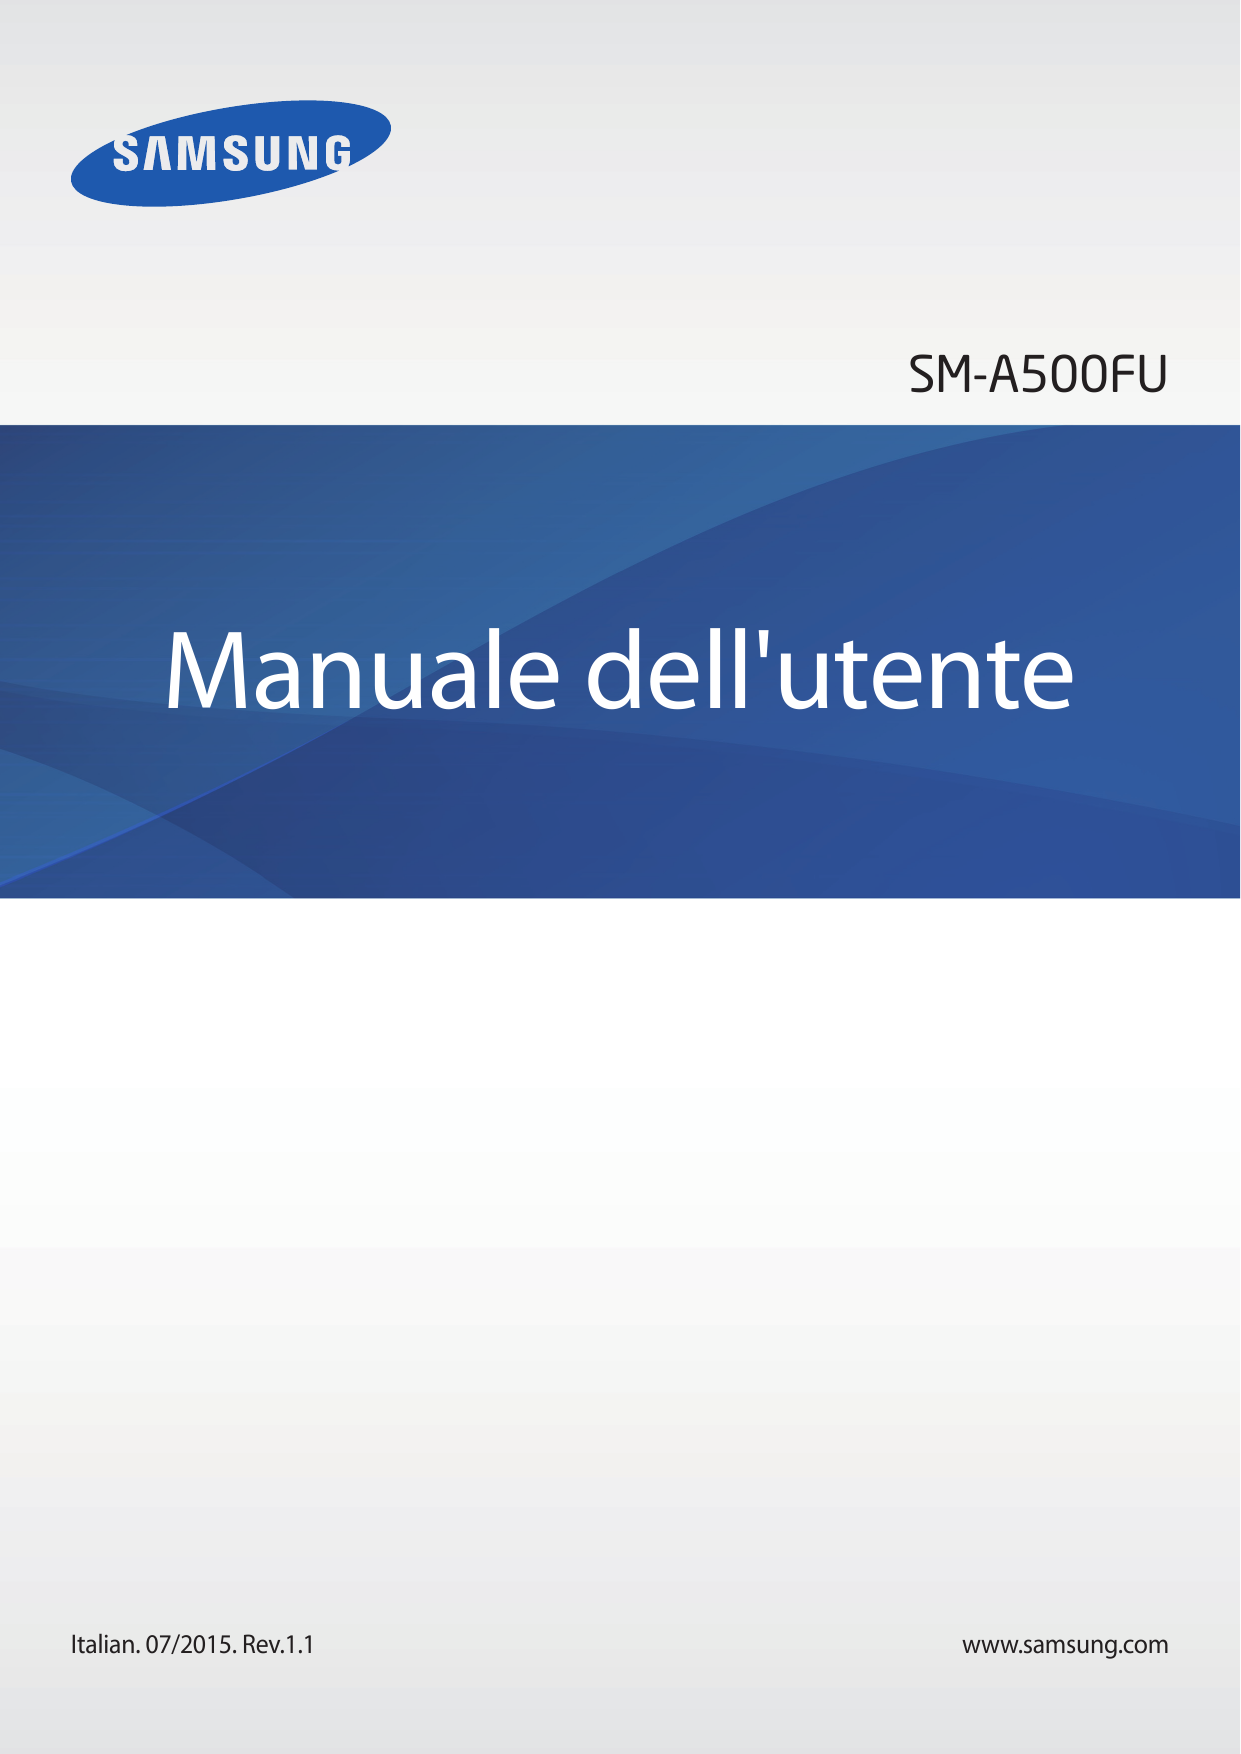 SM-A500FUManuale dell'utenteItalian. 07/2015. Rev.1.1www.samsung.com